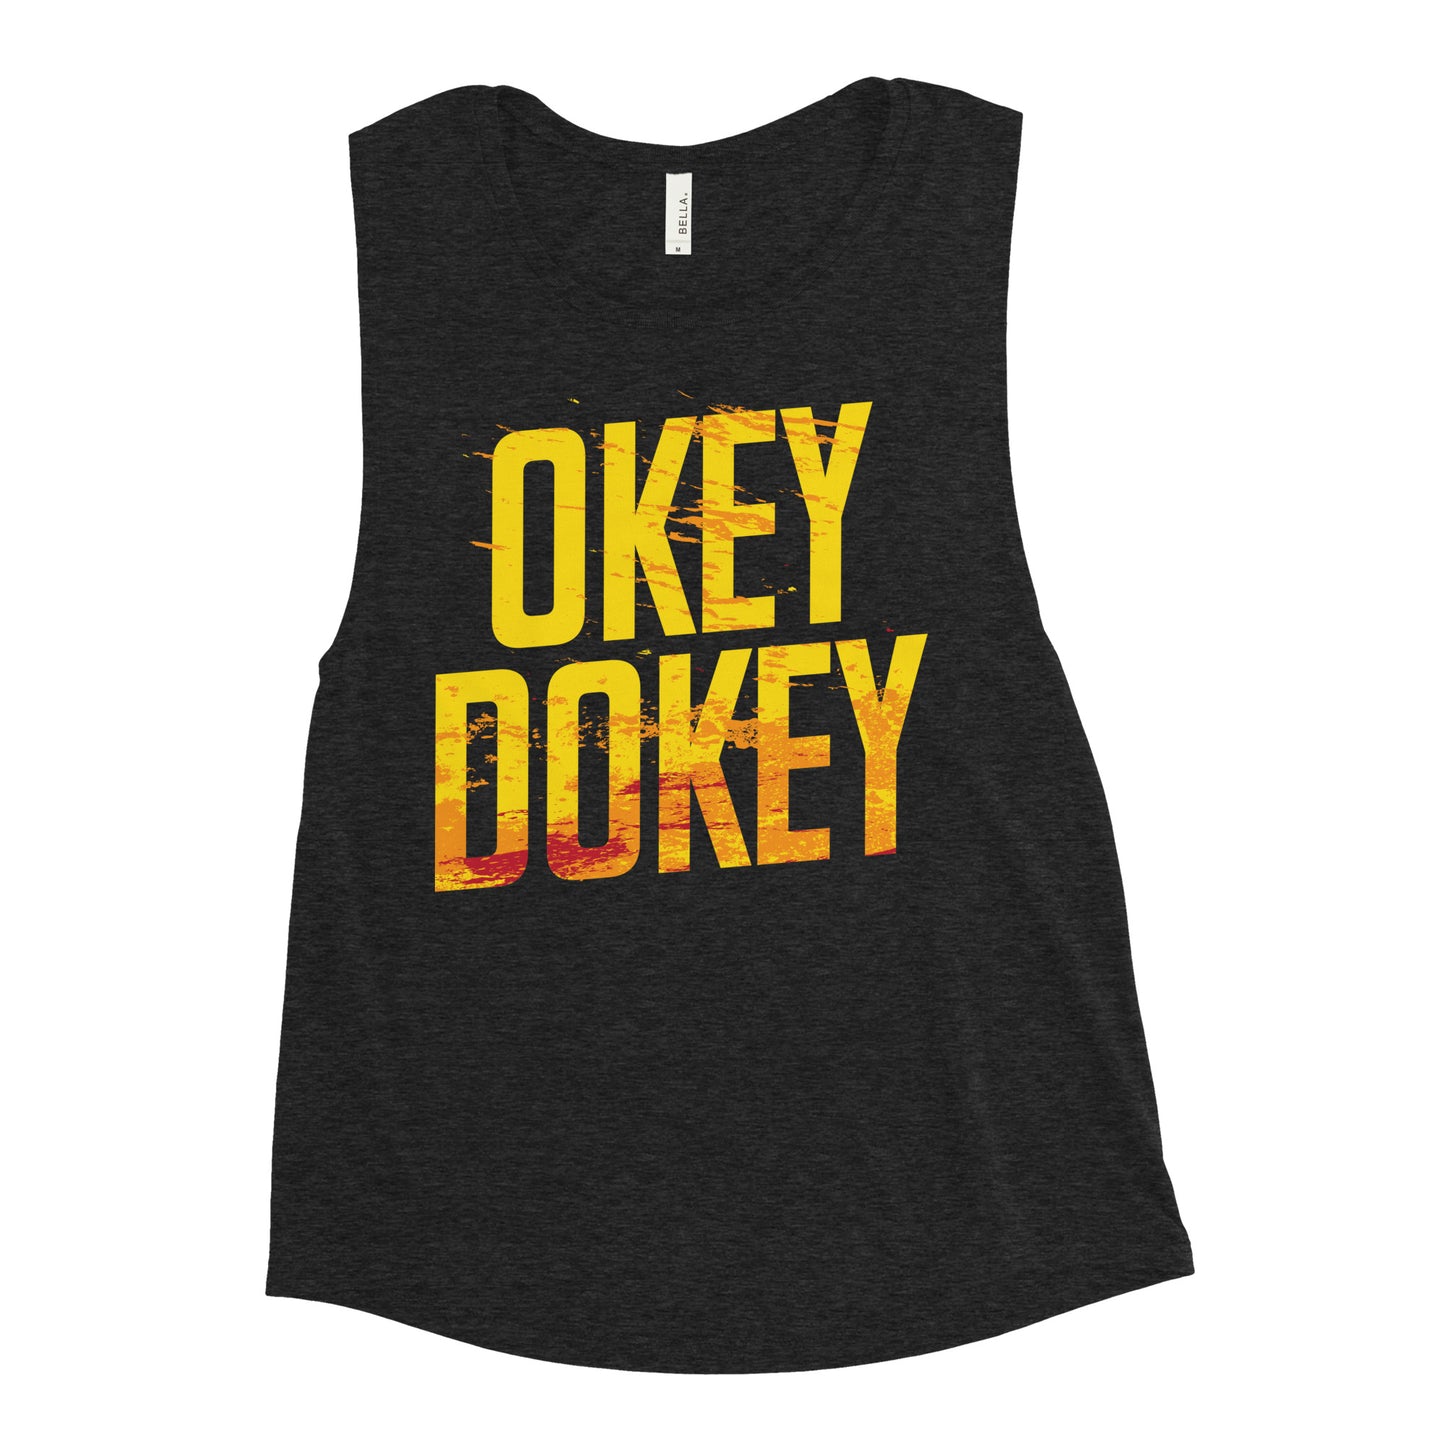 Okey Dokey Women's Muscle Tank